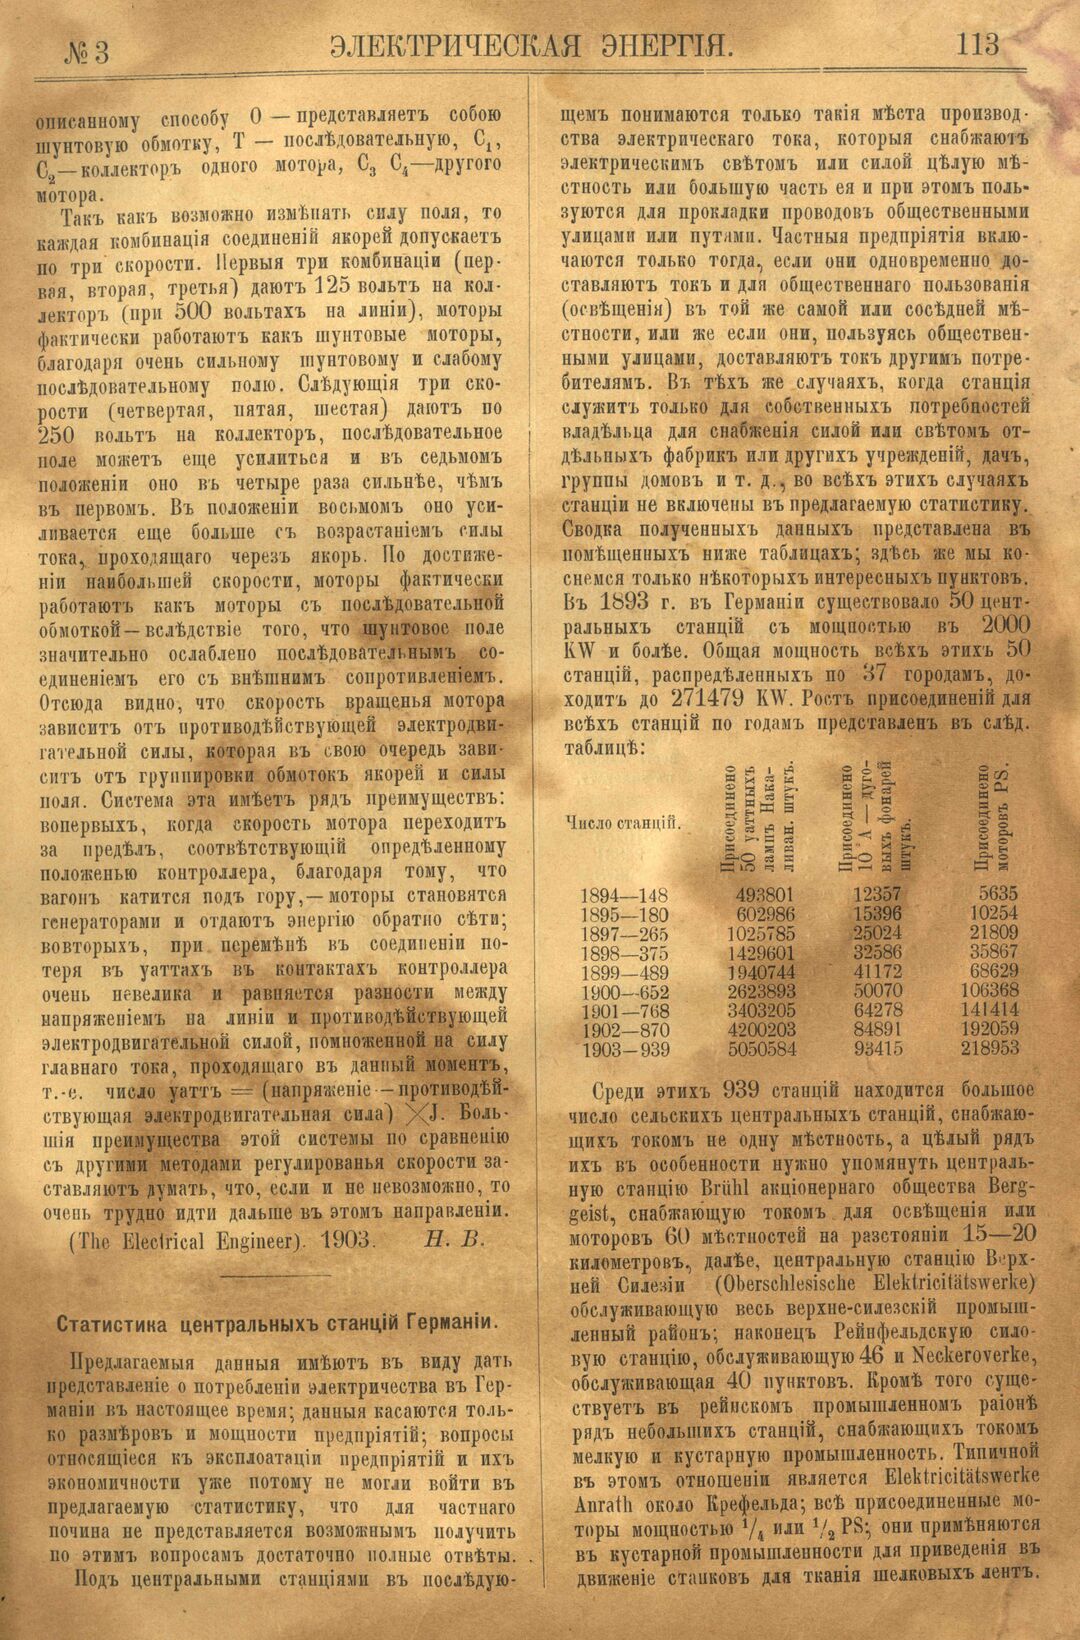 Рис. 1. Журнал Электрическая Энергiя, 3 номер, март, 1904 года, страница 113